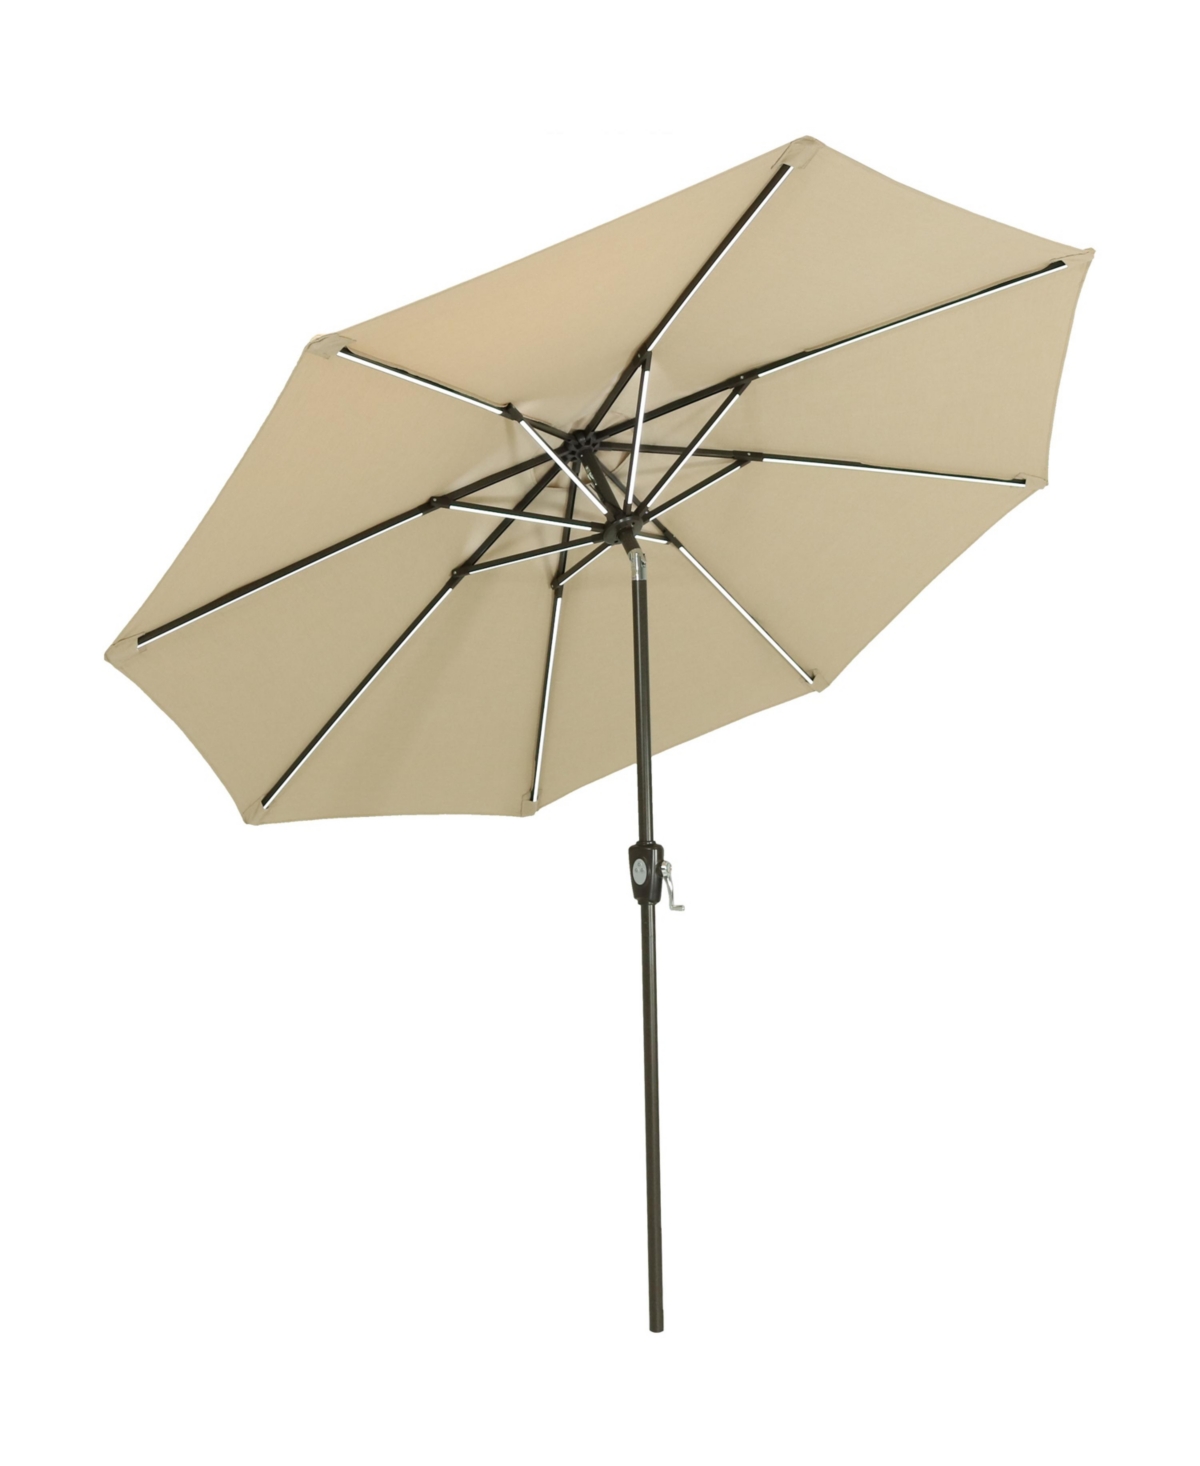 9 ft Solar Sunbrella Patio Umbrella with Tilt - Beige - Cream